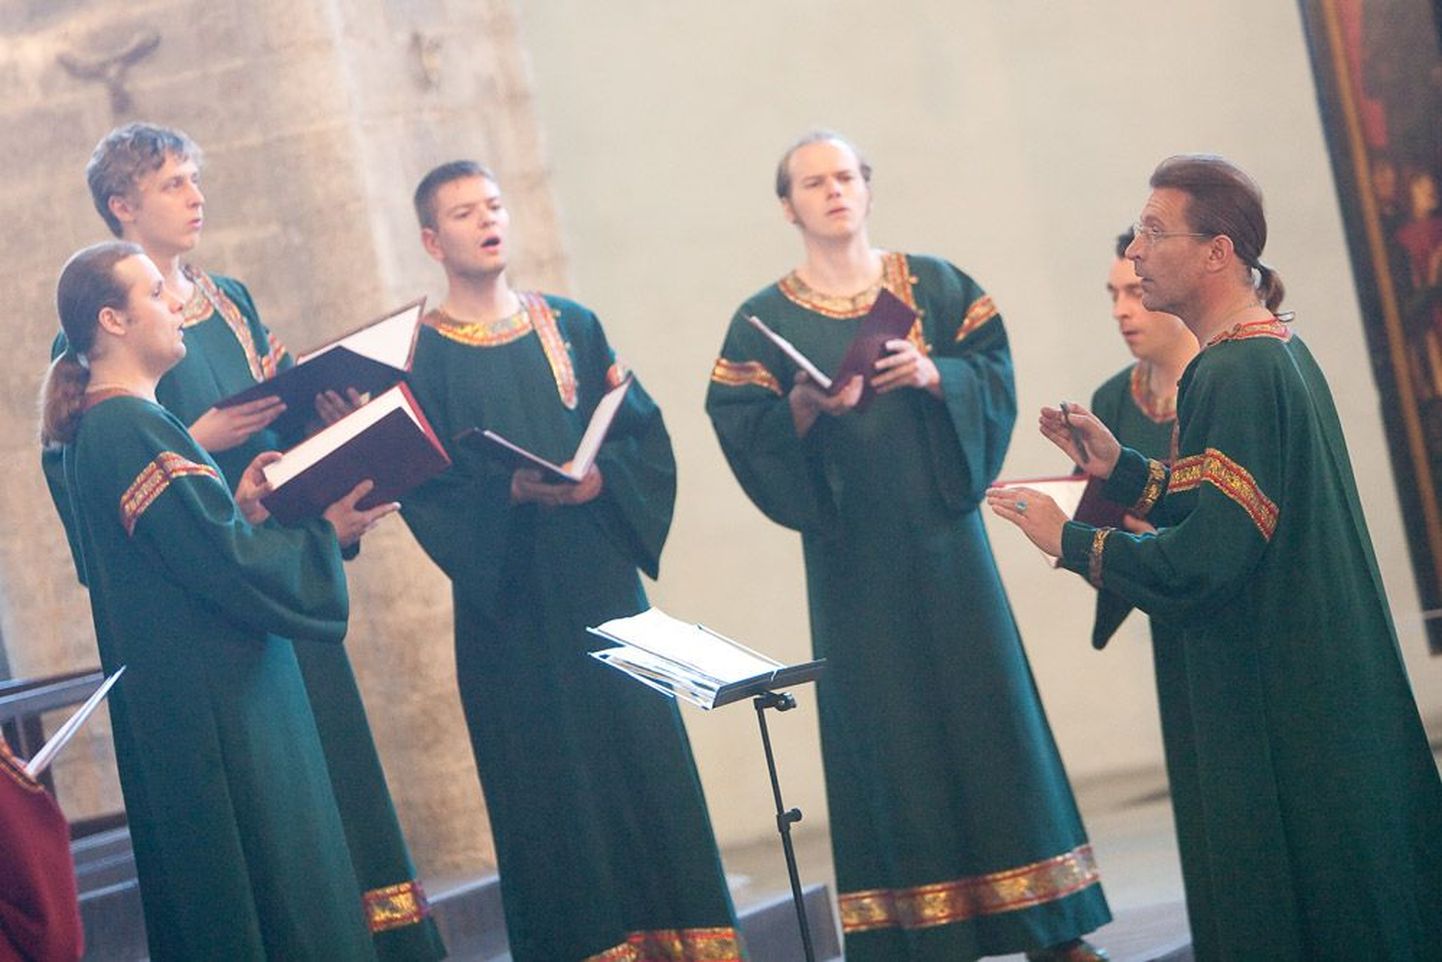 Хор под управлением Валерия Петрова (справа) более 20 лет радует поклонников духовной музыки прекрасным исполнением музыкальных произведений.